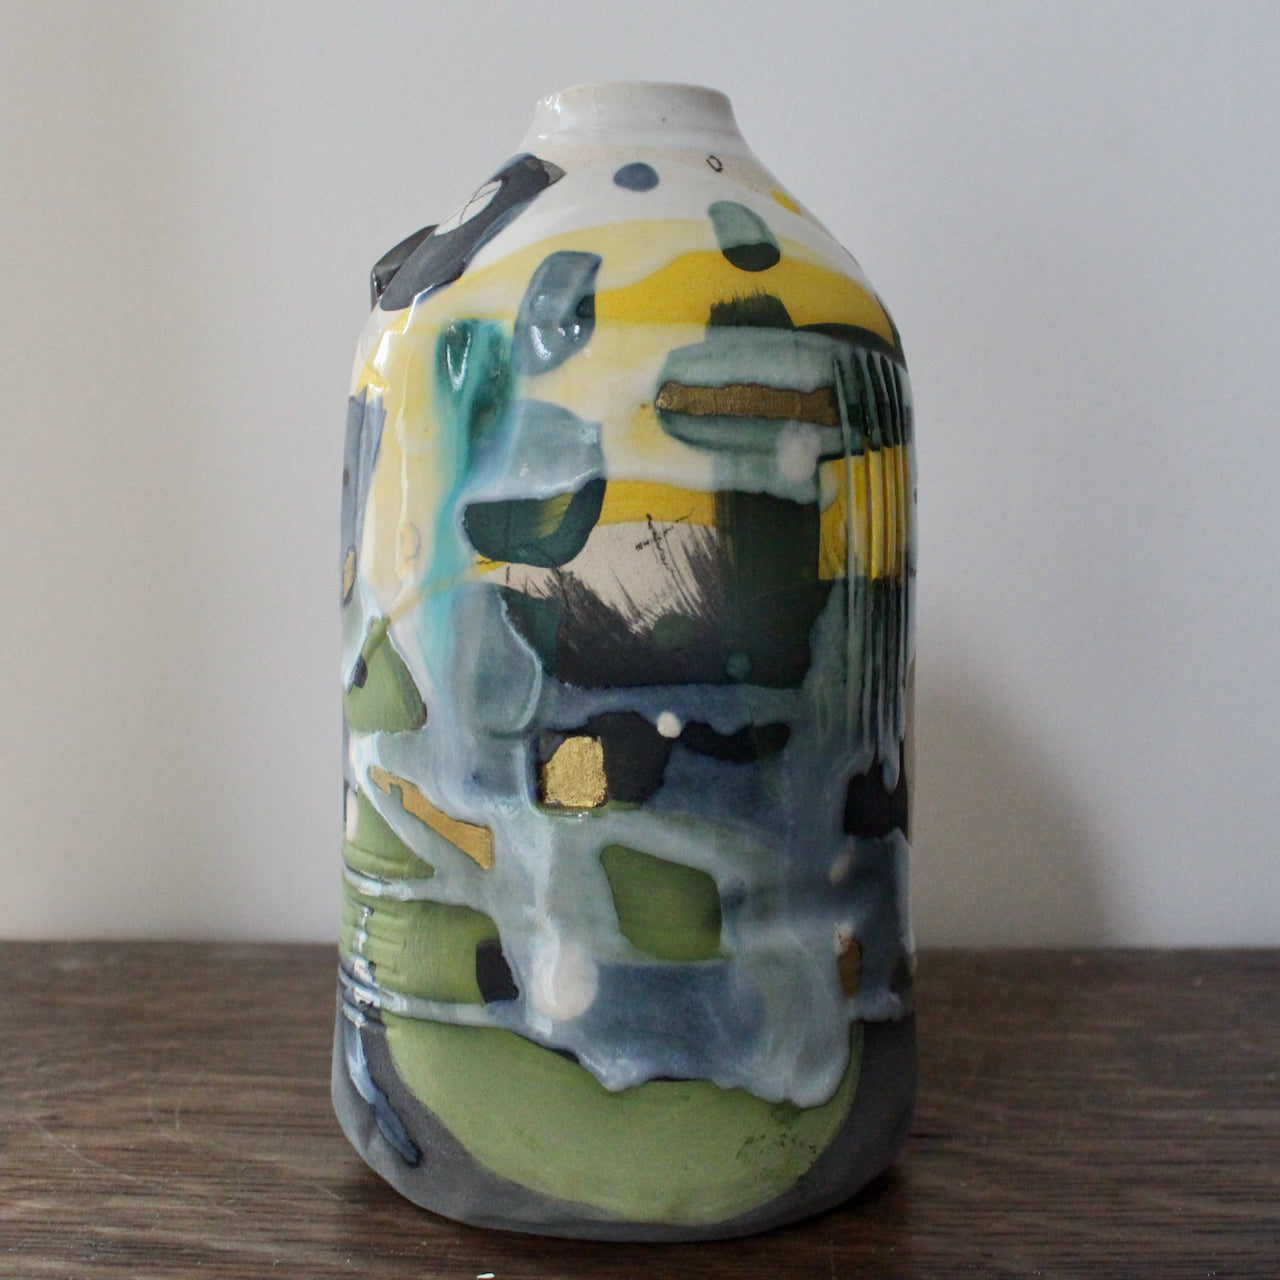 ceramic bottle in blue, green and yellow by ceramicist Dawn Hajittofi.